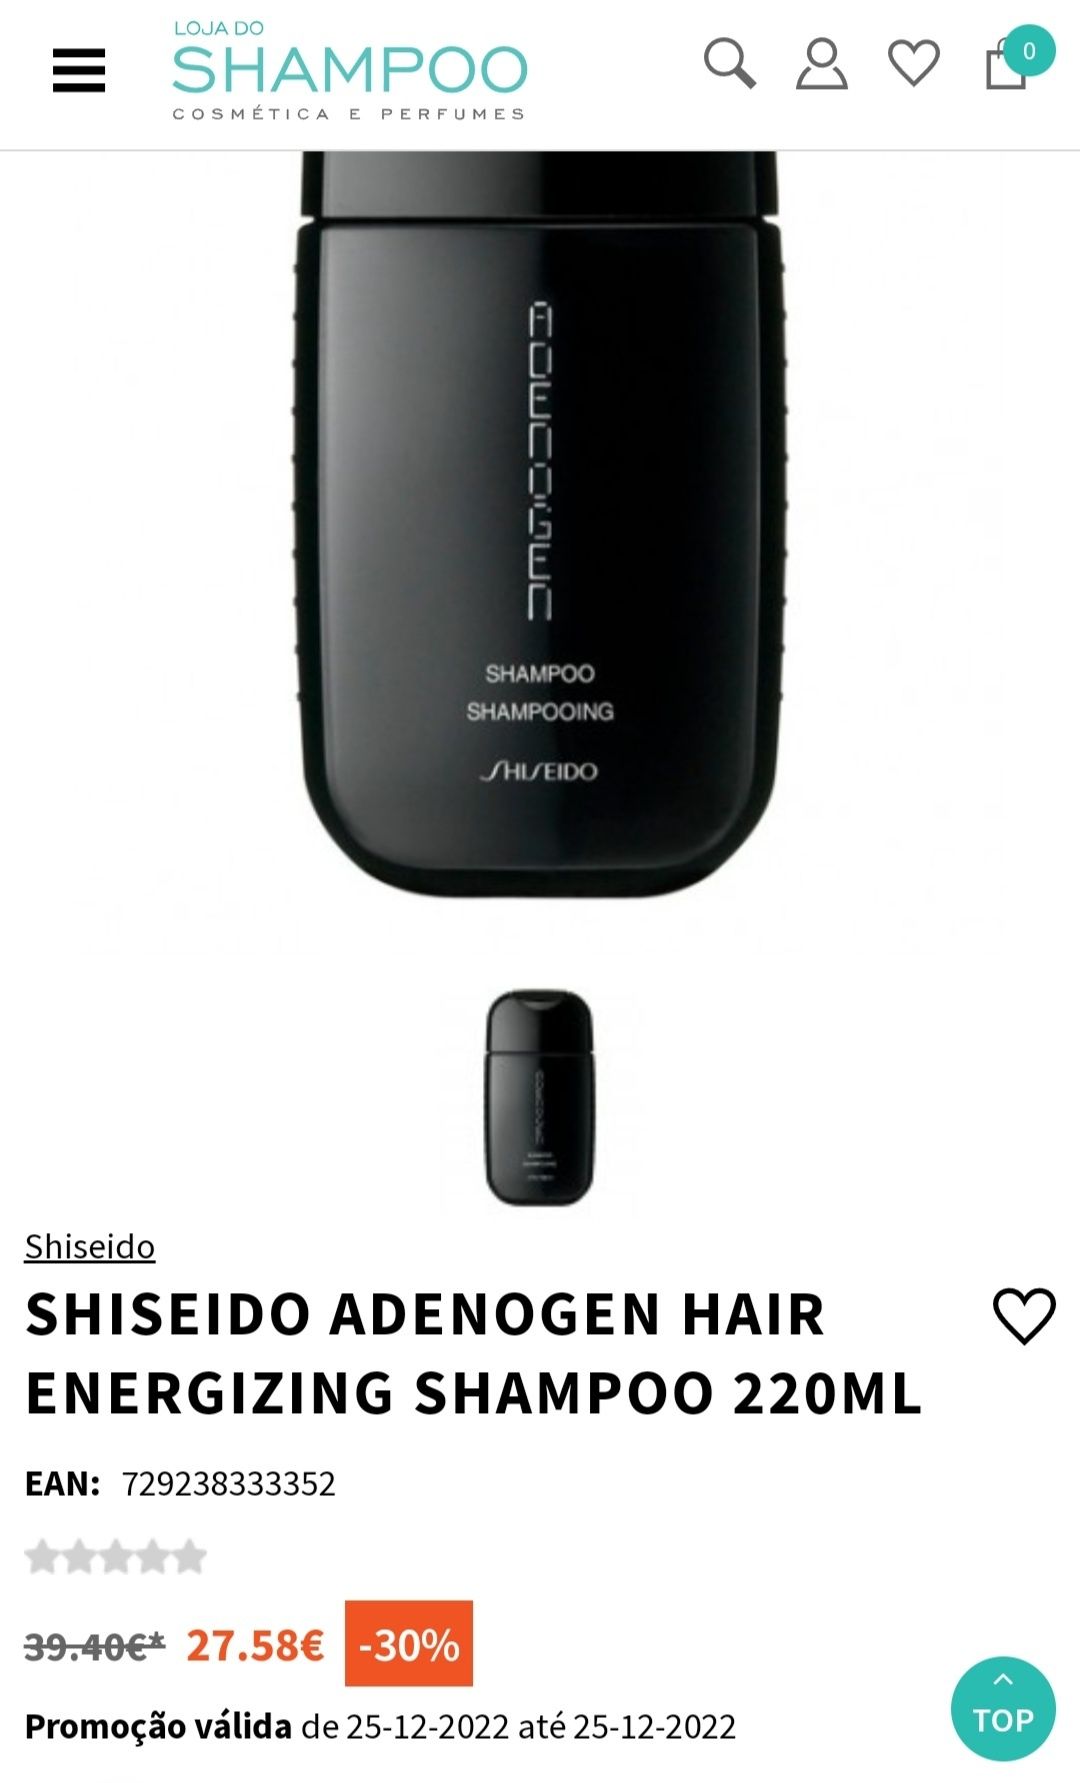 Shiseido shampoo 220ml